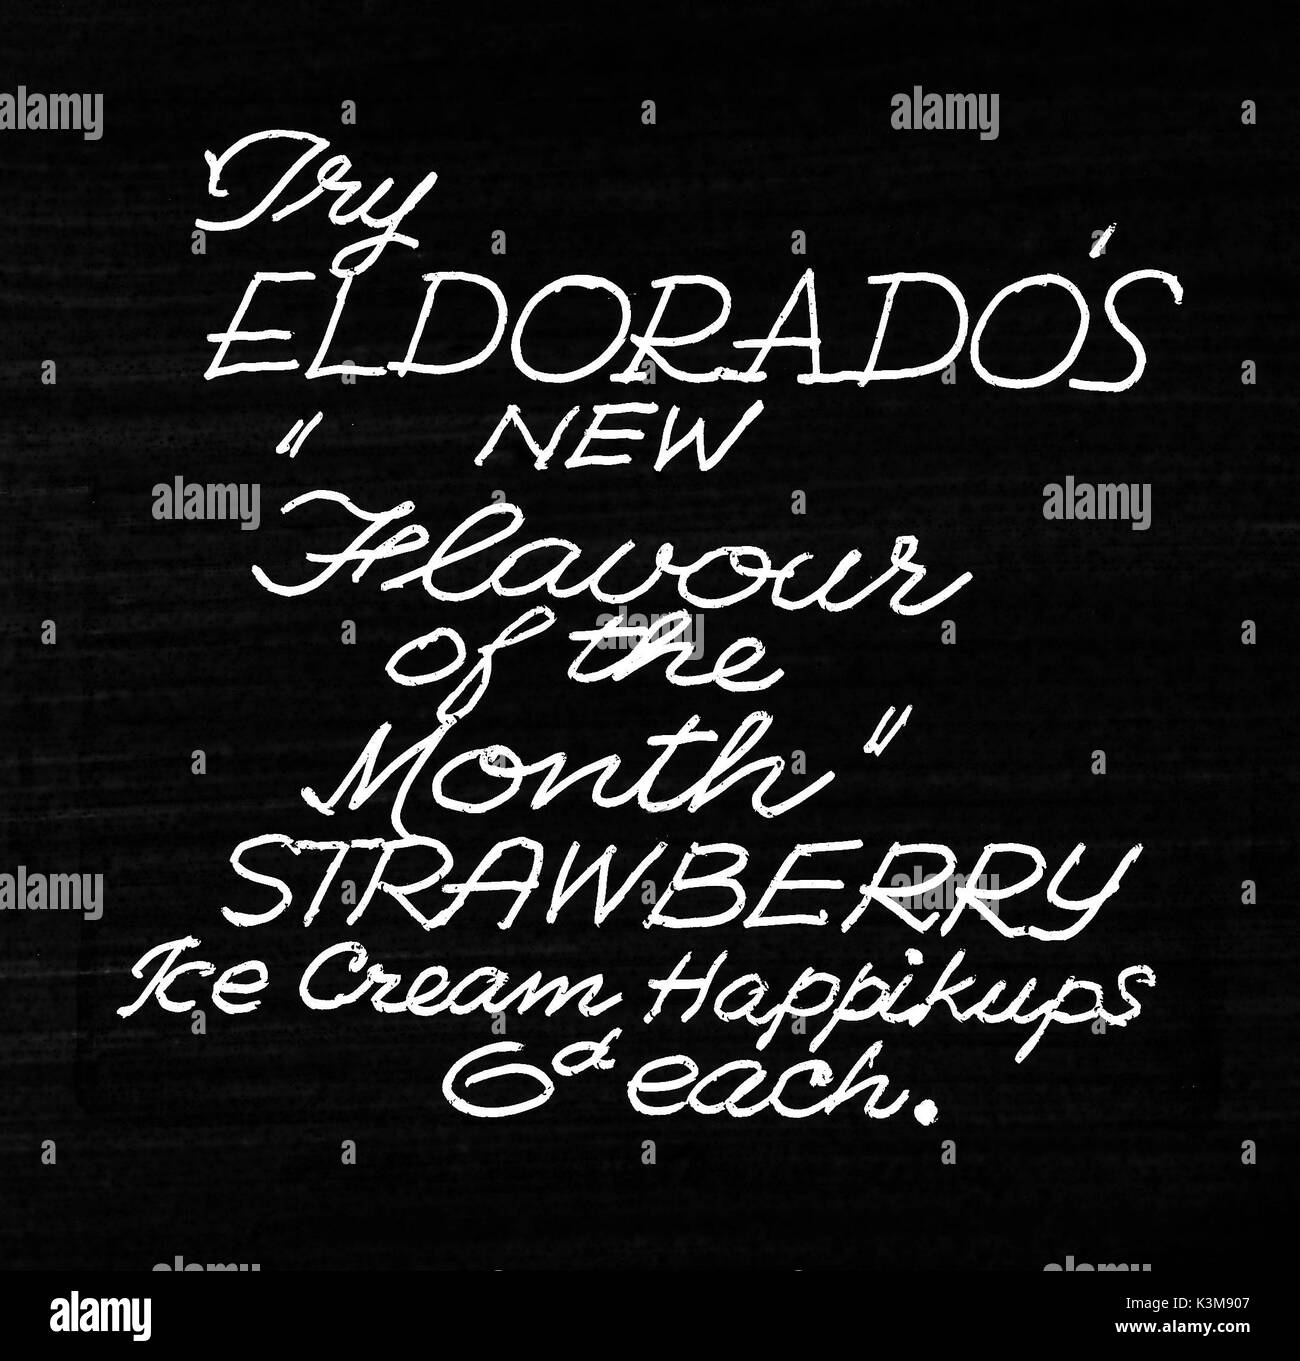 Folie auf einer KINOWERBUNG ELDORADO ICECREAM HAPPICUPS IM NEUEN GESCHMACK DES MONATS - Erdbeere Datum: Stockfoto